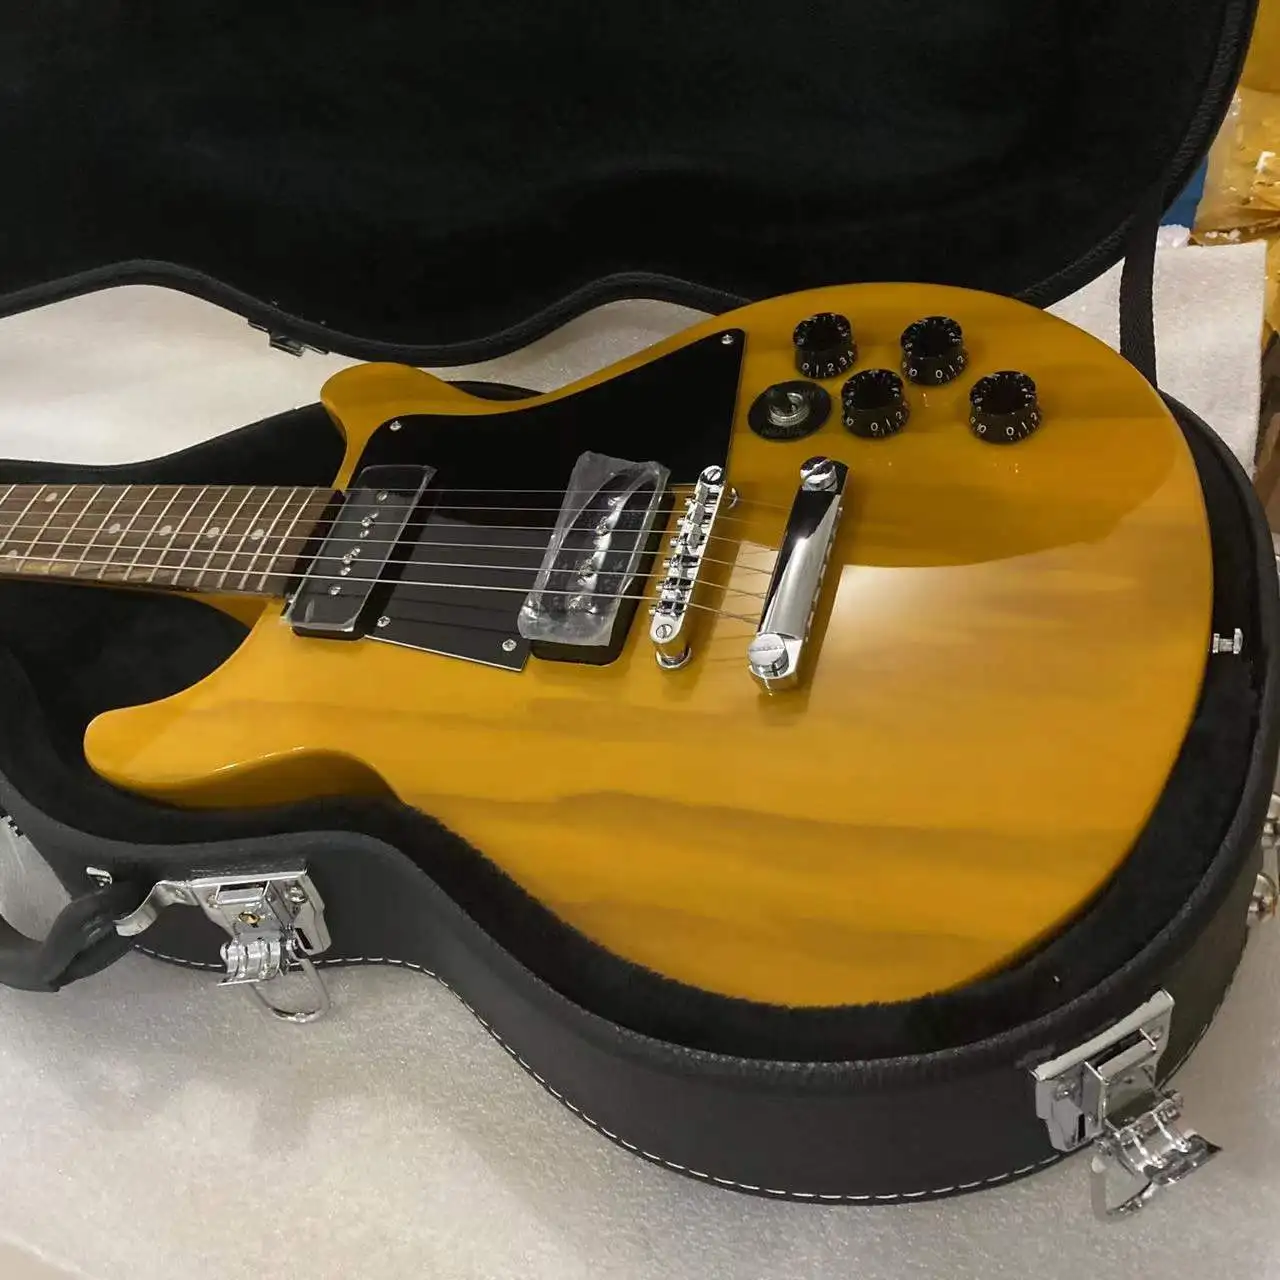 1960 детская Специальная двойная репродукция электрическая гитара прозрачный желтый цвет Высокое качество гитара бесплатная доставка